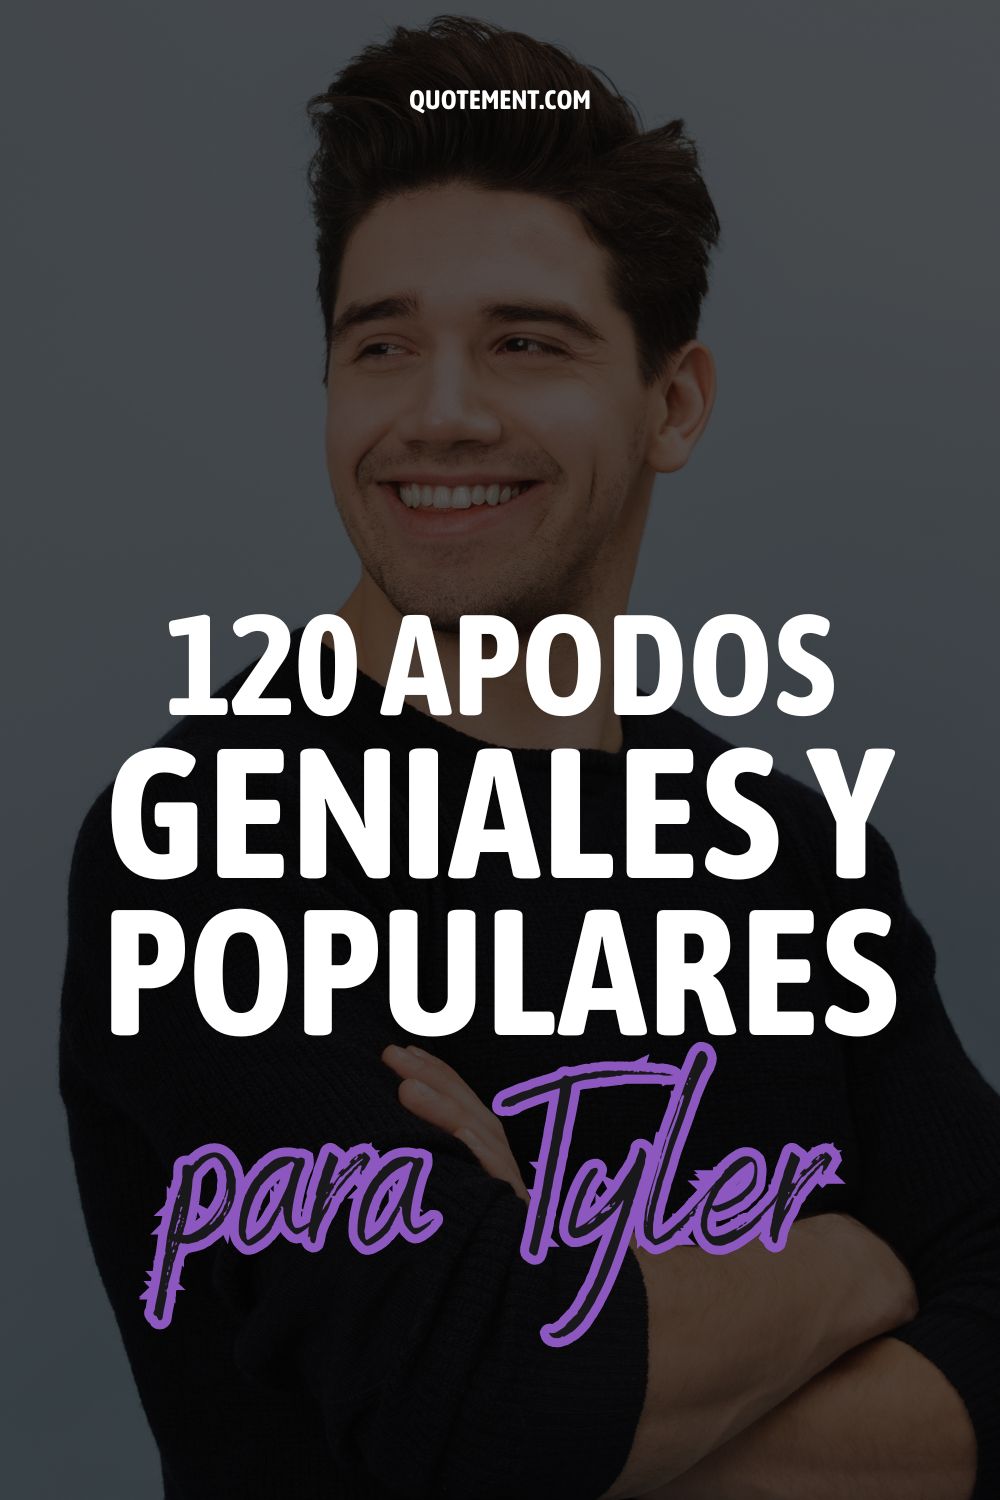 Apodos para Tyler 120 Nombres geniales y populares